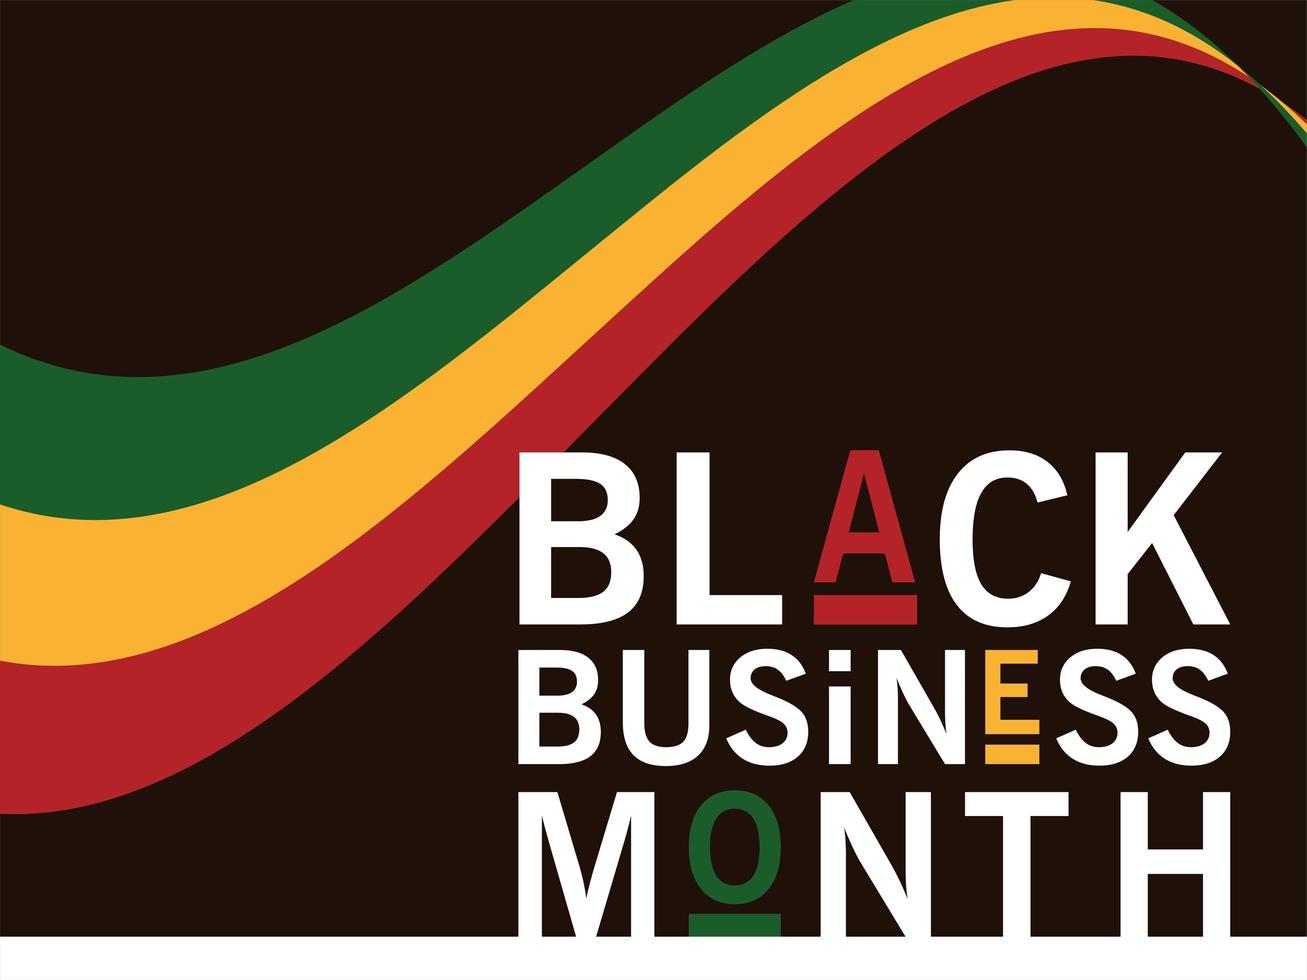 mês de negócios preto com desenho de vetor de fita verde amarela e vermelha